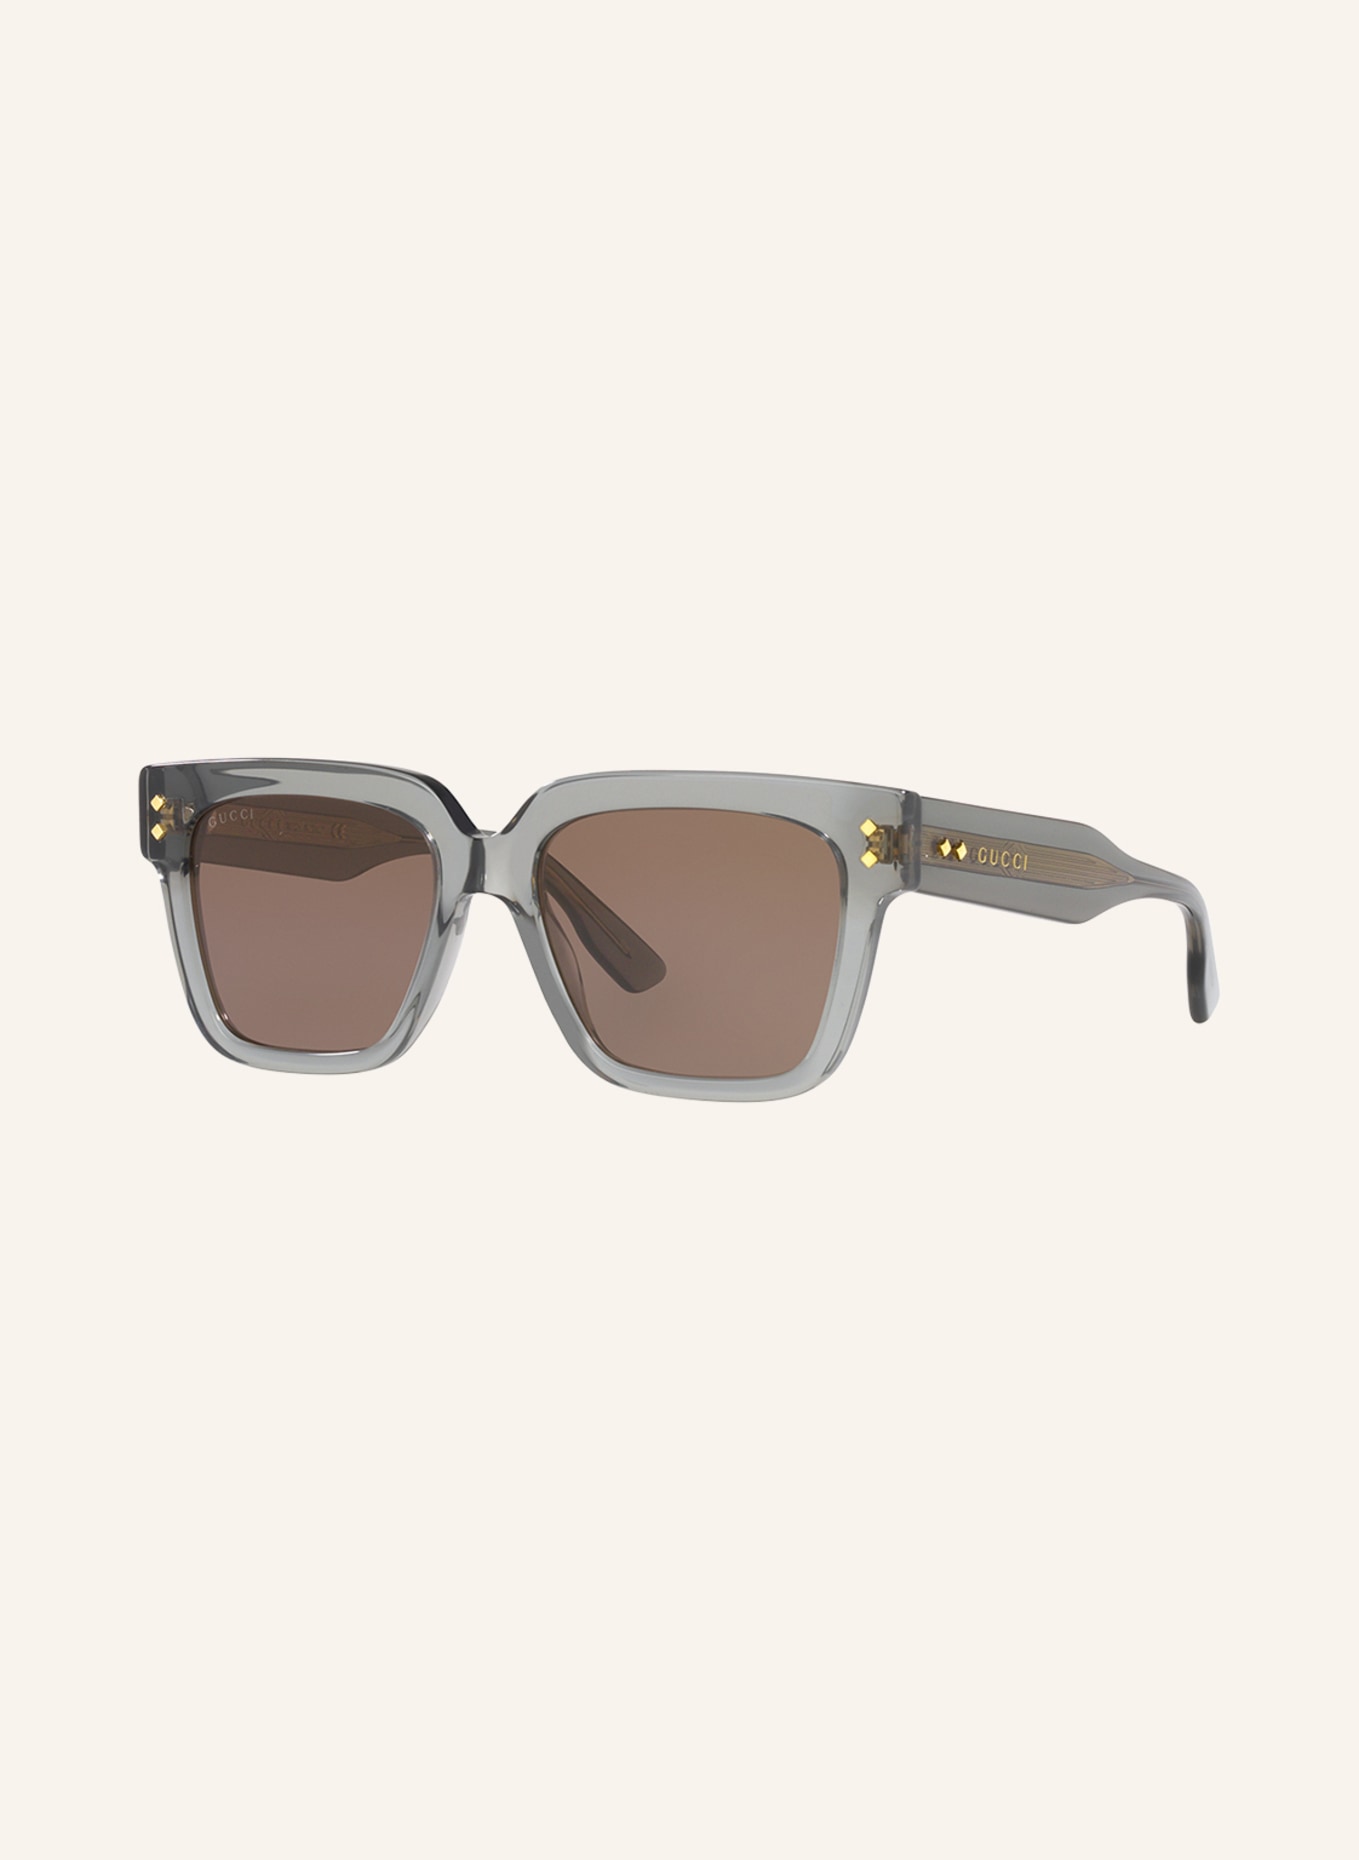 GUCCI Sunglasses GC001829, Color: 2600L1 - GRAY/BROWN (Image 1)